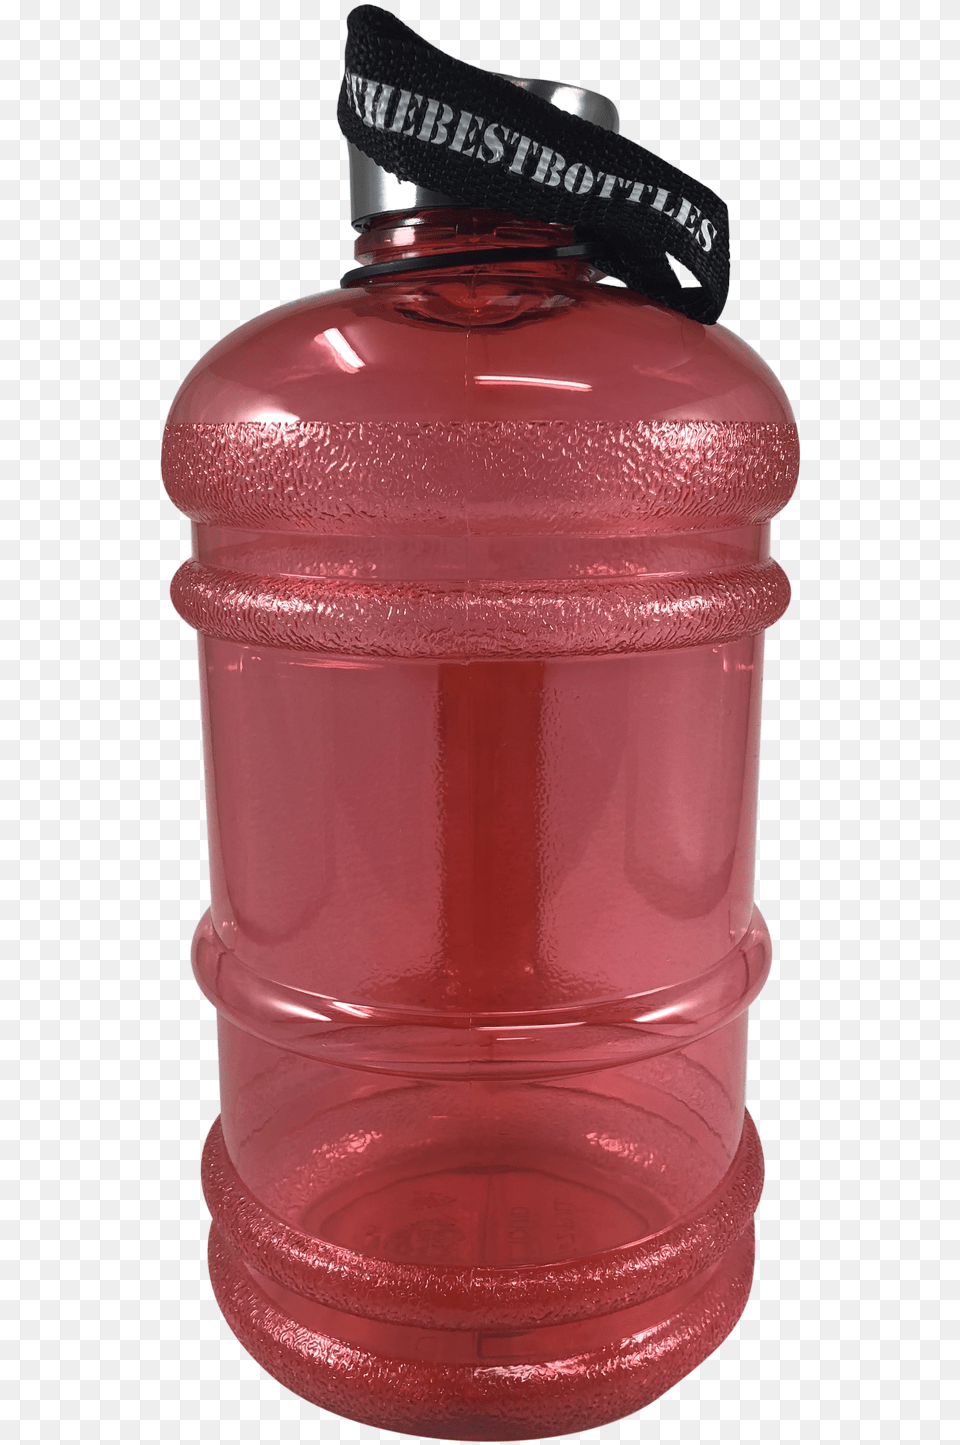 Bottle Water Bottle, Jug, Shaker, Water Bottle, Water Jug Free Png